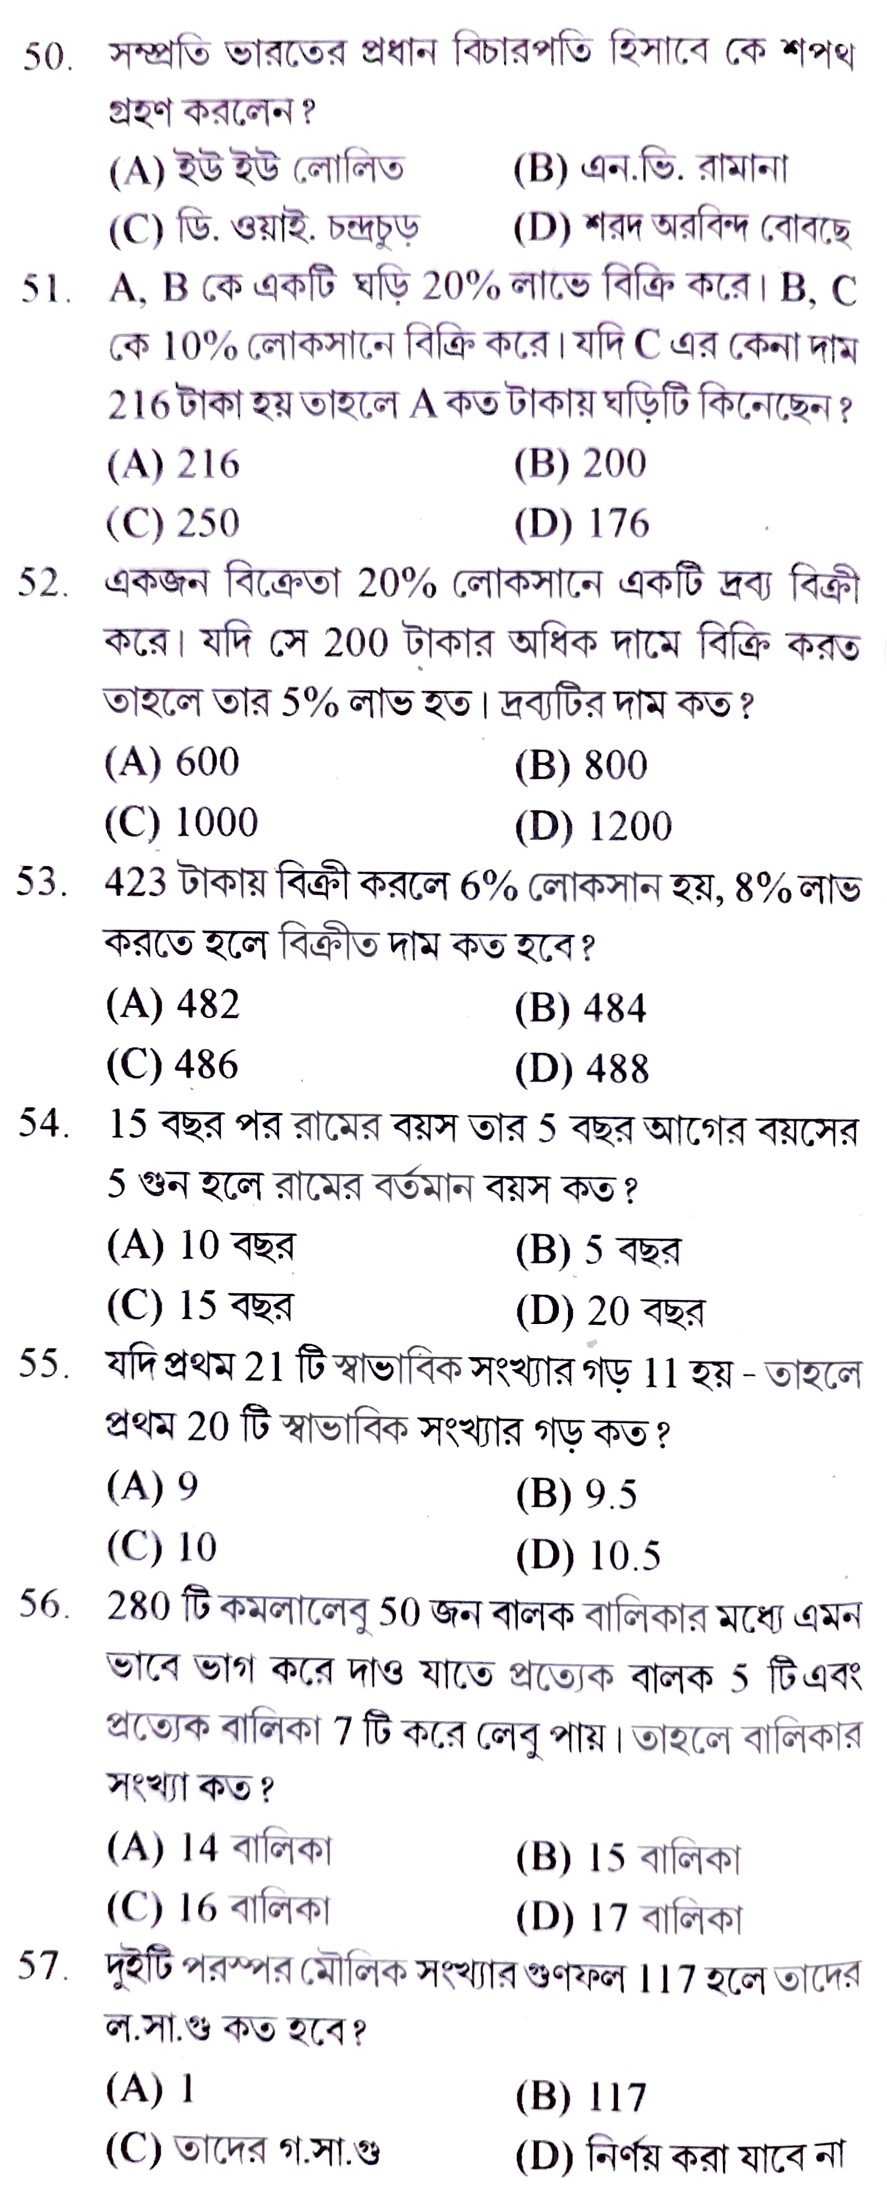 ফুড সাব ইন্সপেক্টর  টি জেনারেল স্টাডিজ ও ৫০ টি অ্যারিথমেটিক প্রাকটিস সেট পিডিএফ ||Food SI General Studies and Arithmetic Practice Set Pdf in Bengali